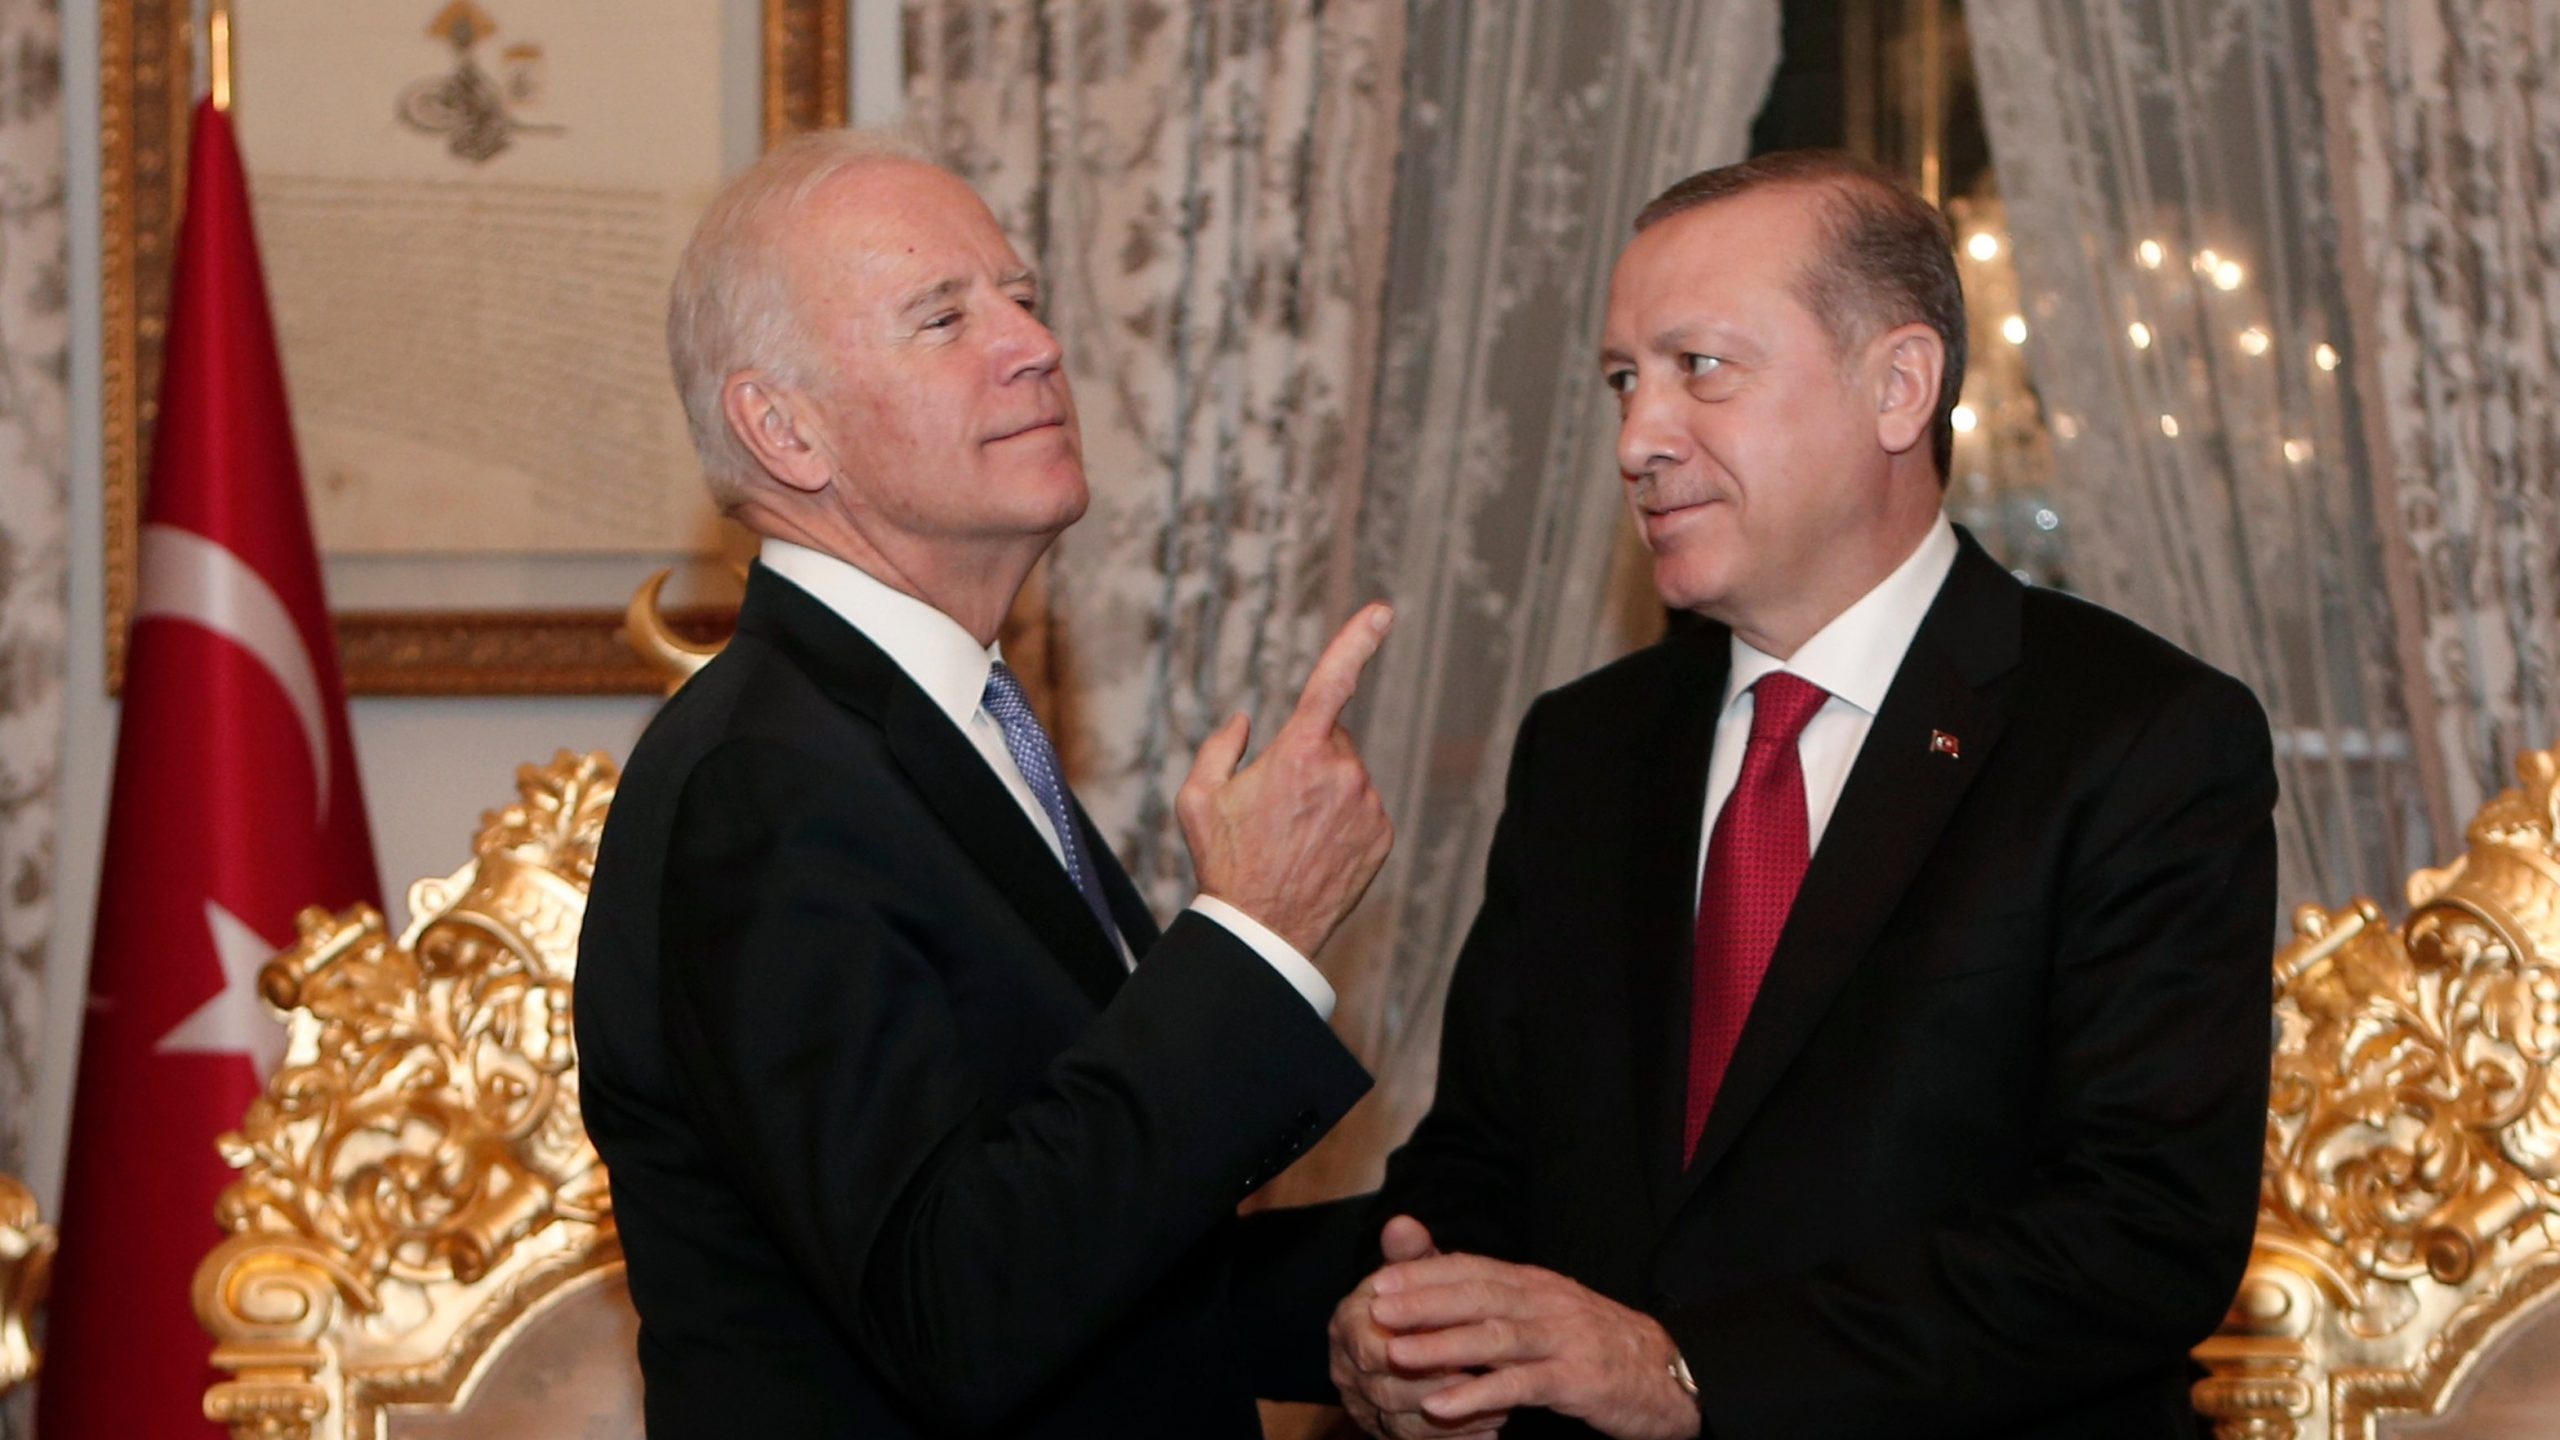 مسئولیت آمریکا در برابر تهدیدهای ترکیه و حل مسئله کردها